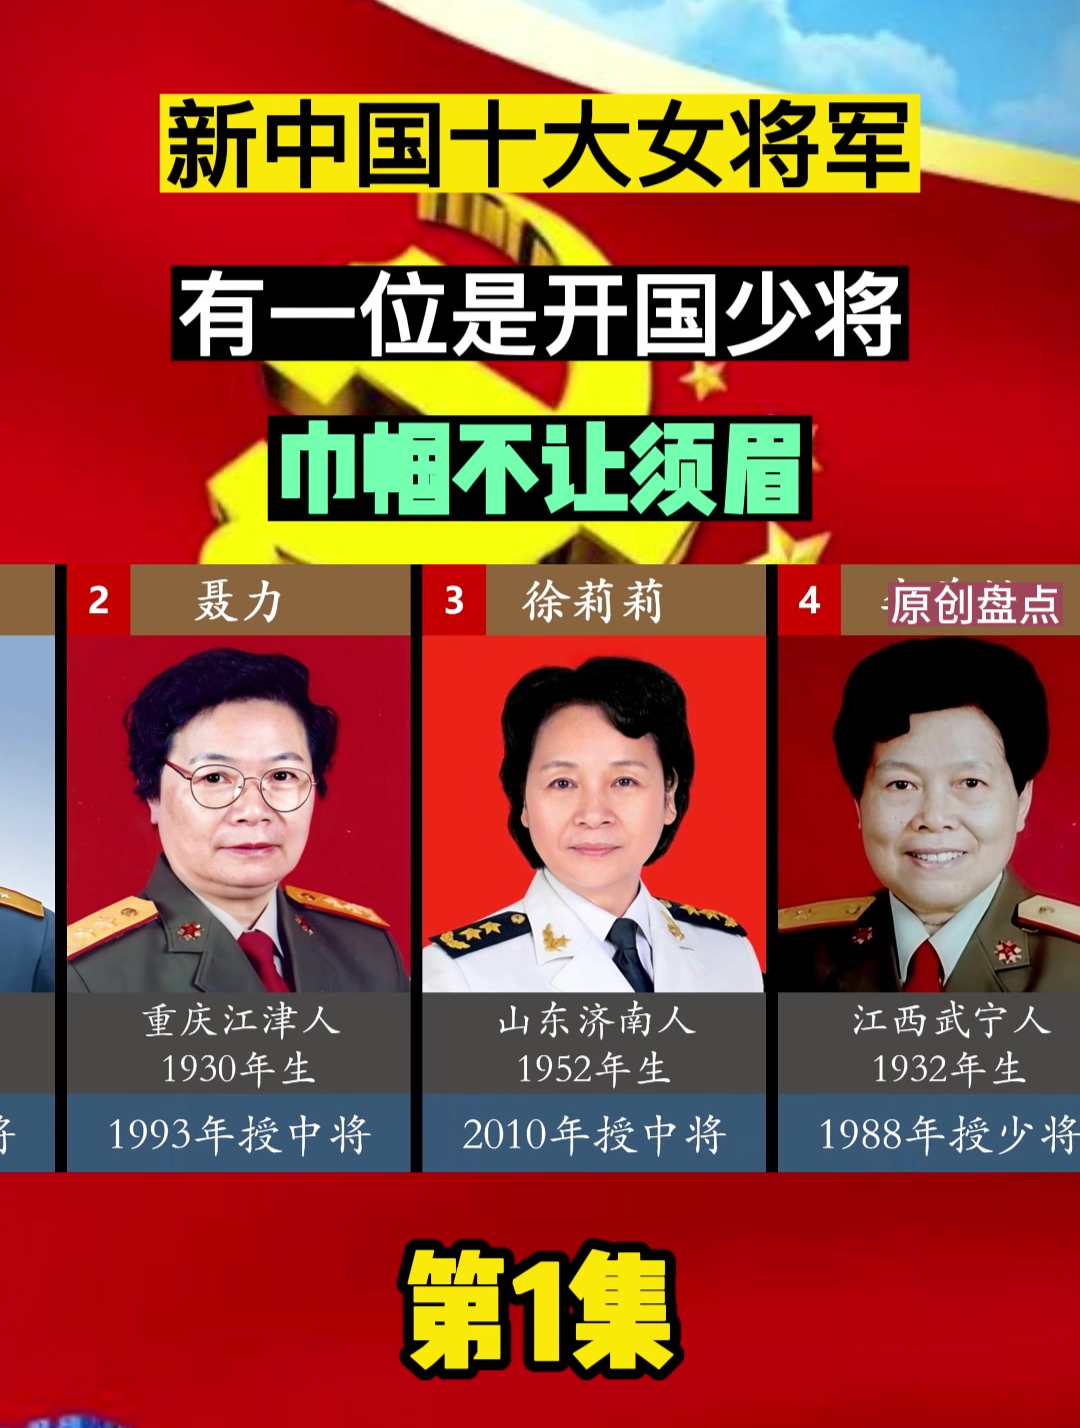 中国女将军最高军衔图片